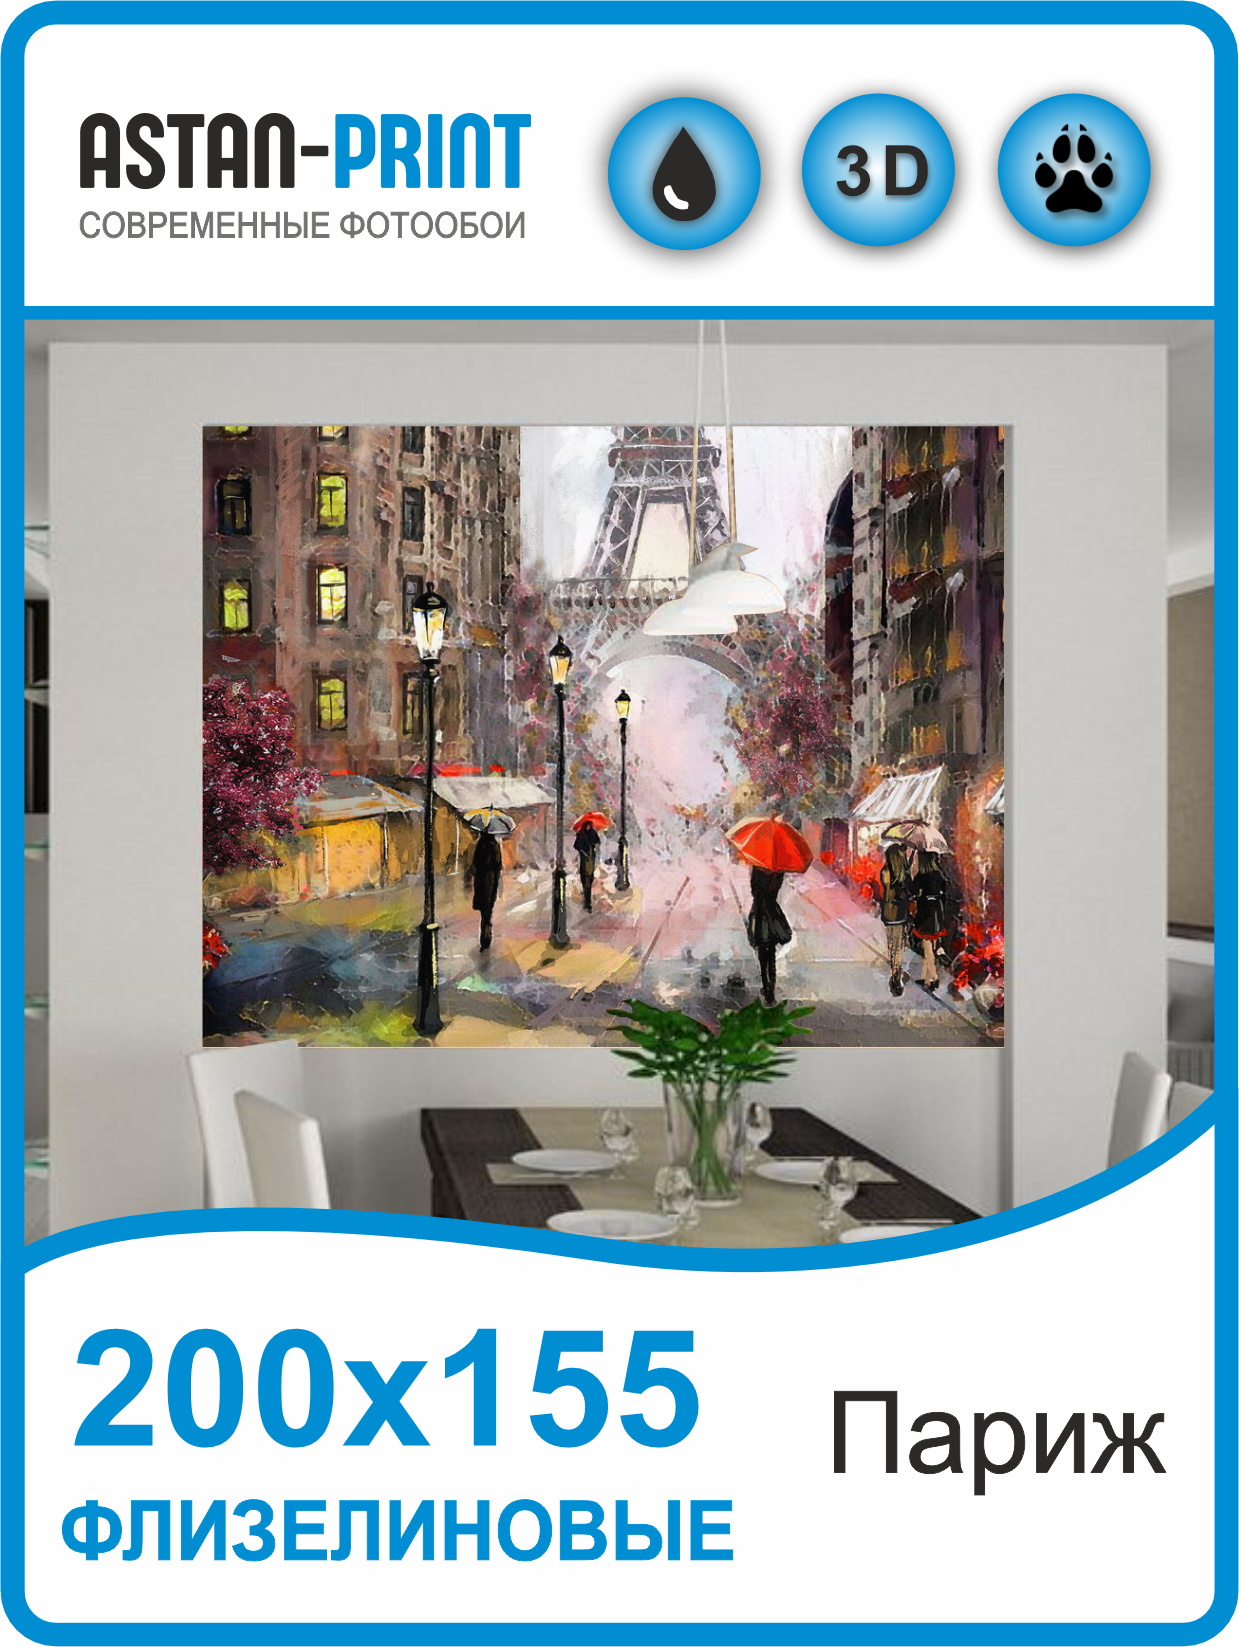 Фотообои для кухни Astan Улицы города Париж 200х155 clp домик ракушка париж бязь м 38 33 28 см